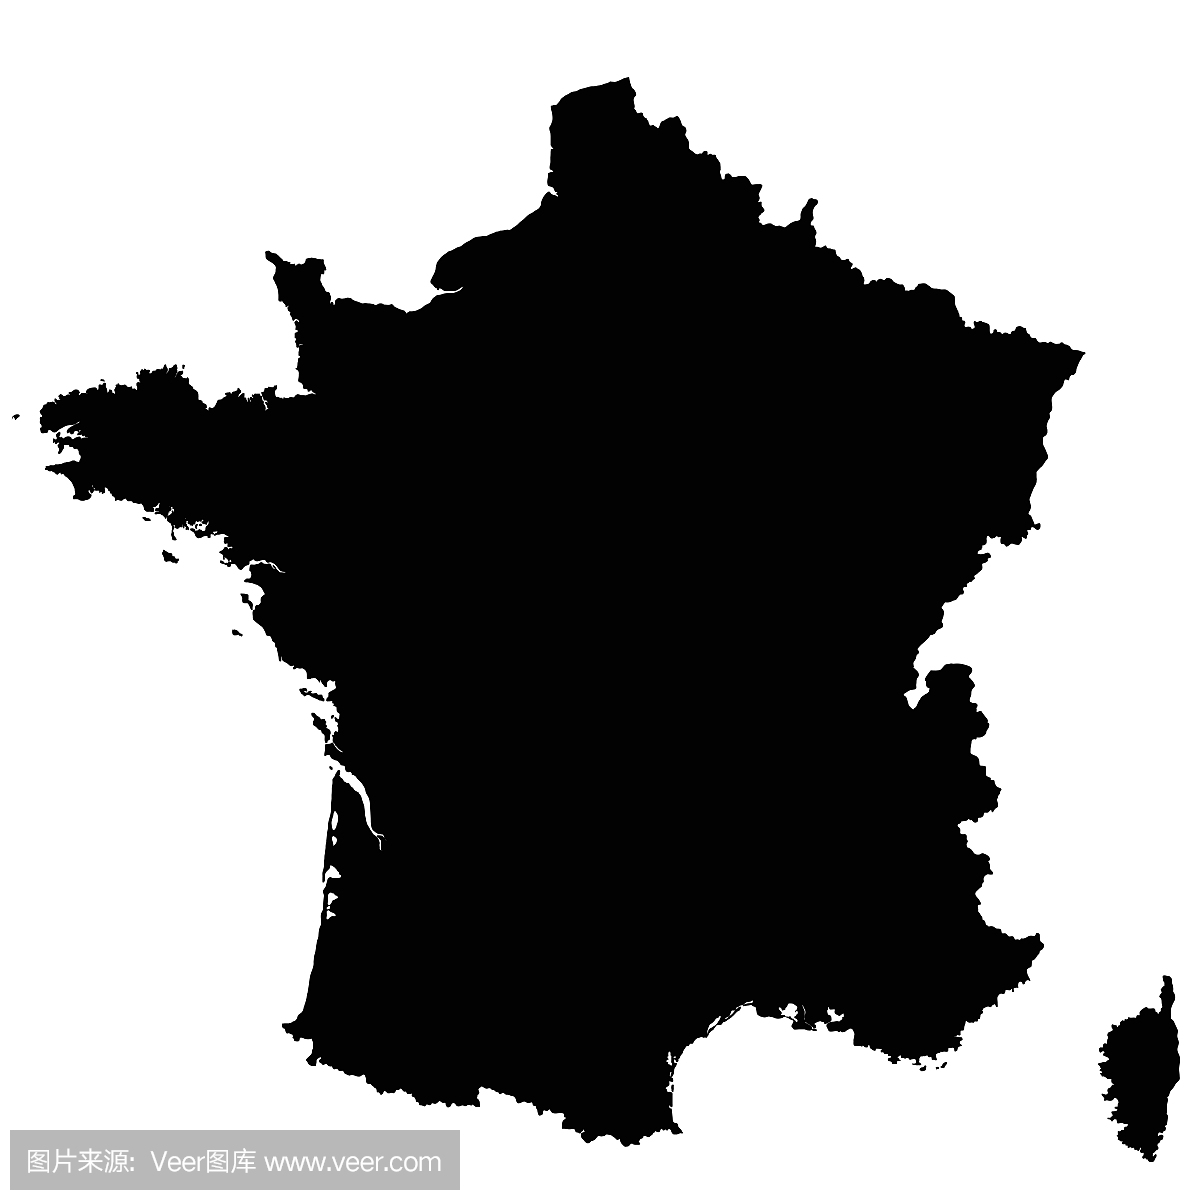 法国地图轮廓矢量